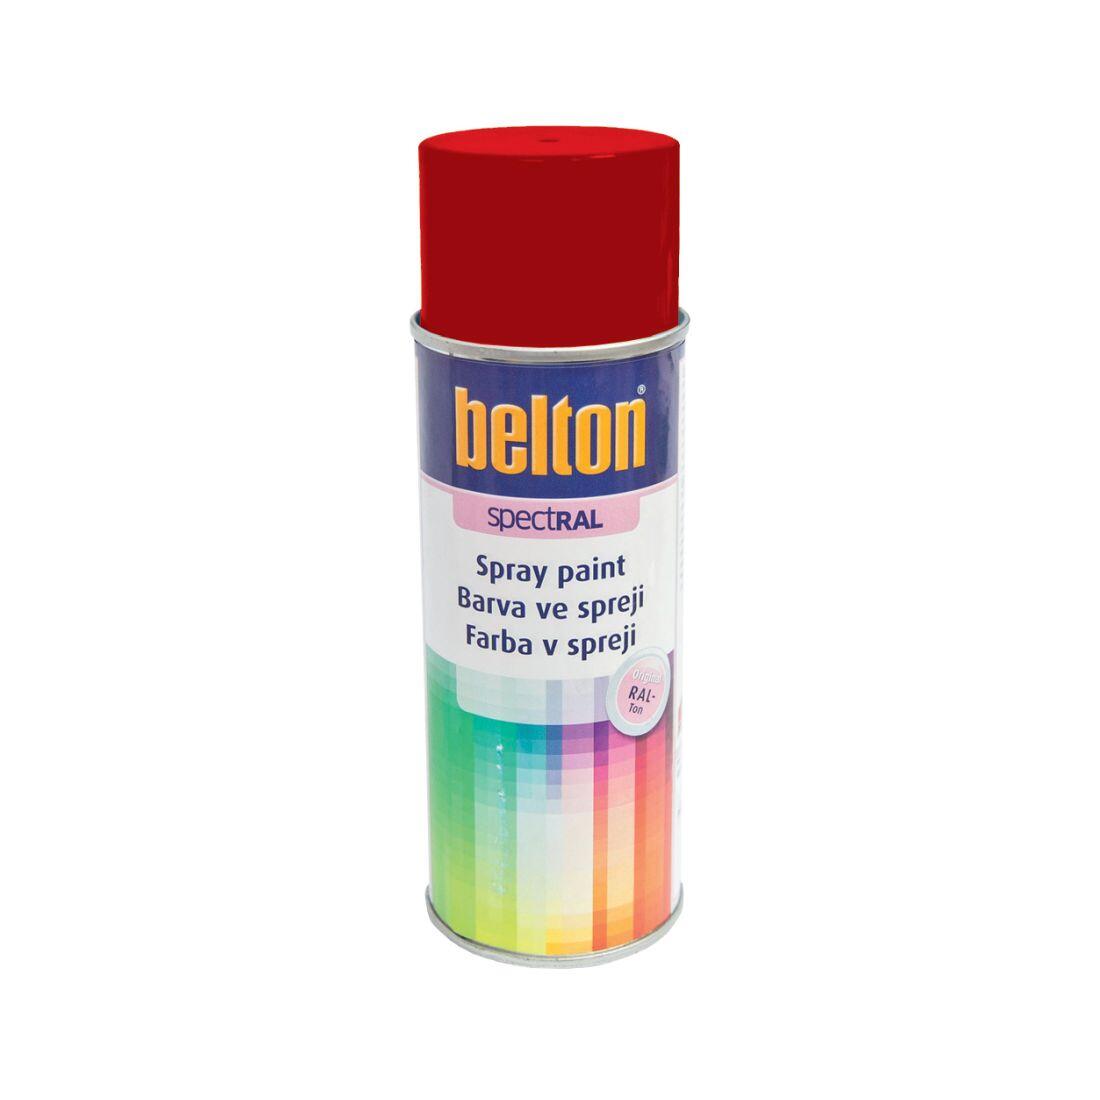 barva ve spreji BELTON RAL 3000, 400ml ČRV ohnivě lesklá 0.31 Kg MAXMIX Sklad14 825129 16